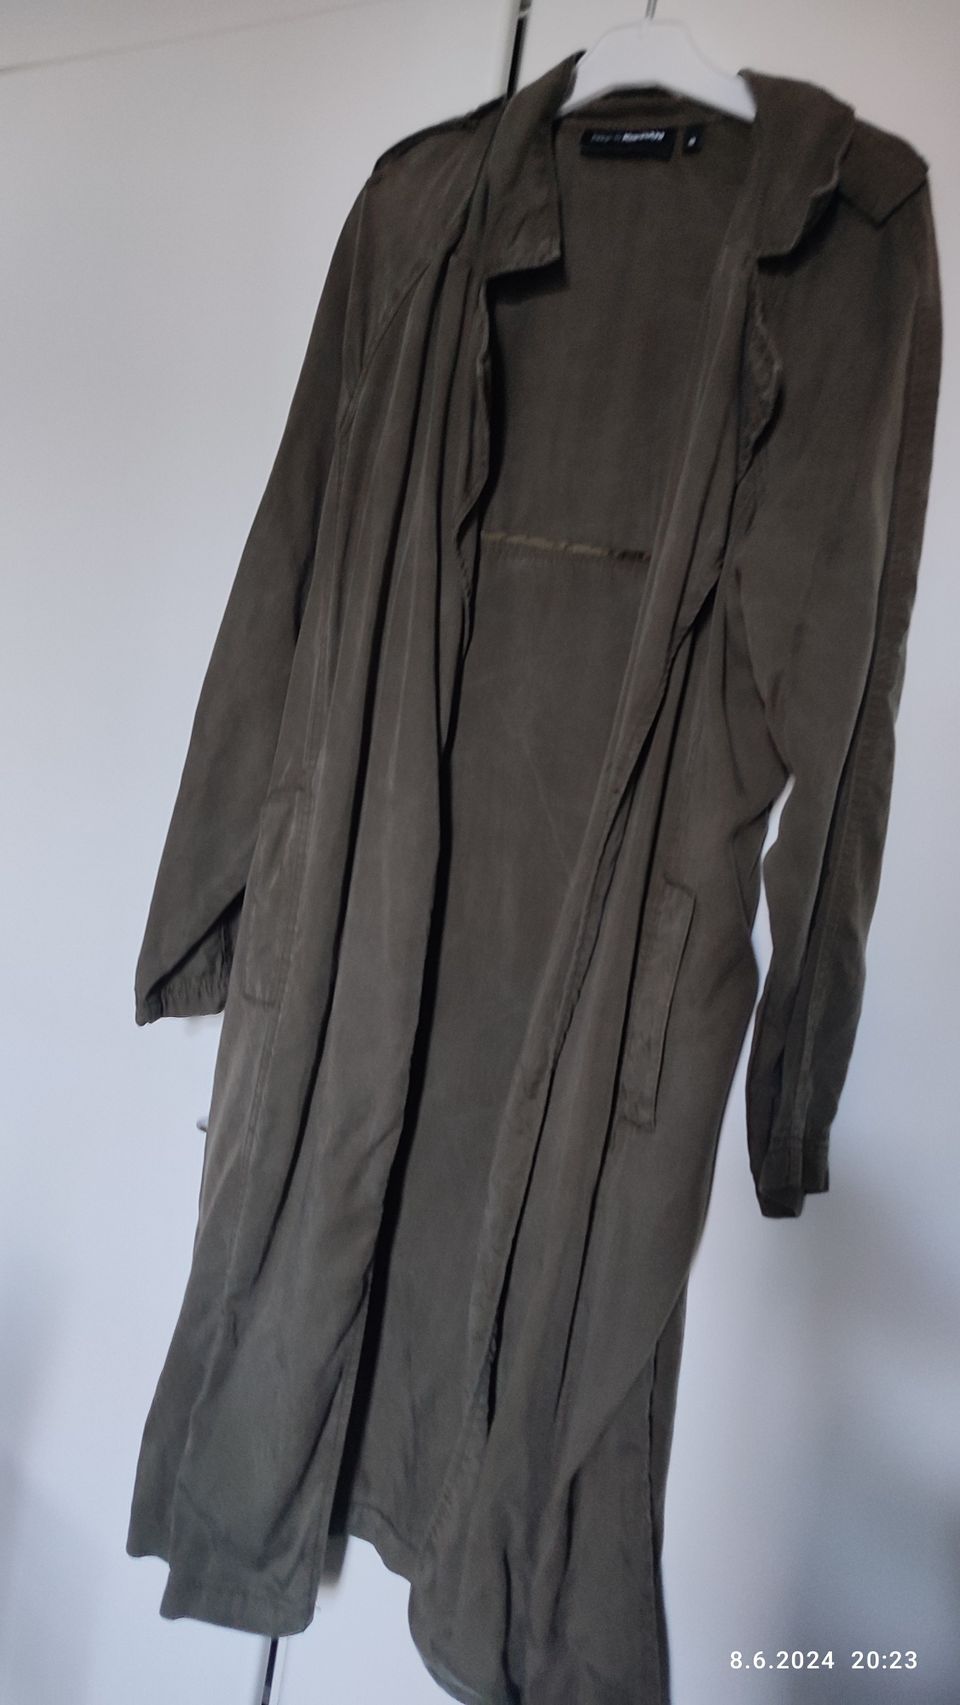 Tummanvihreä pitkä takki